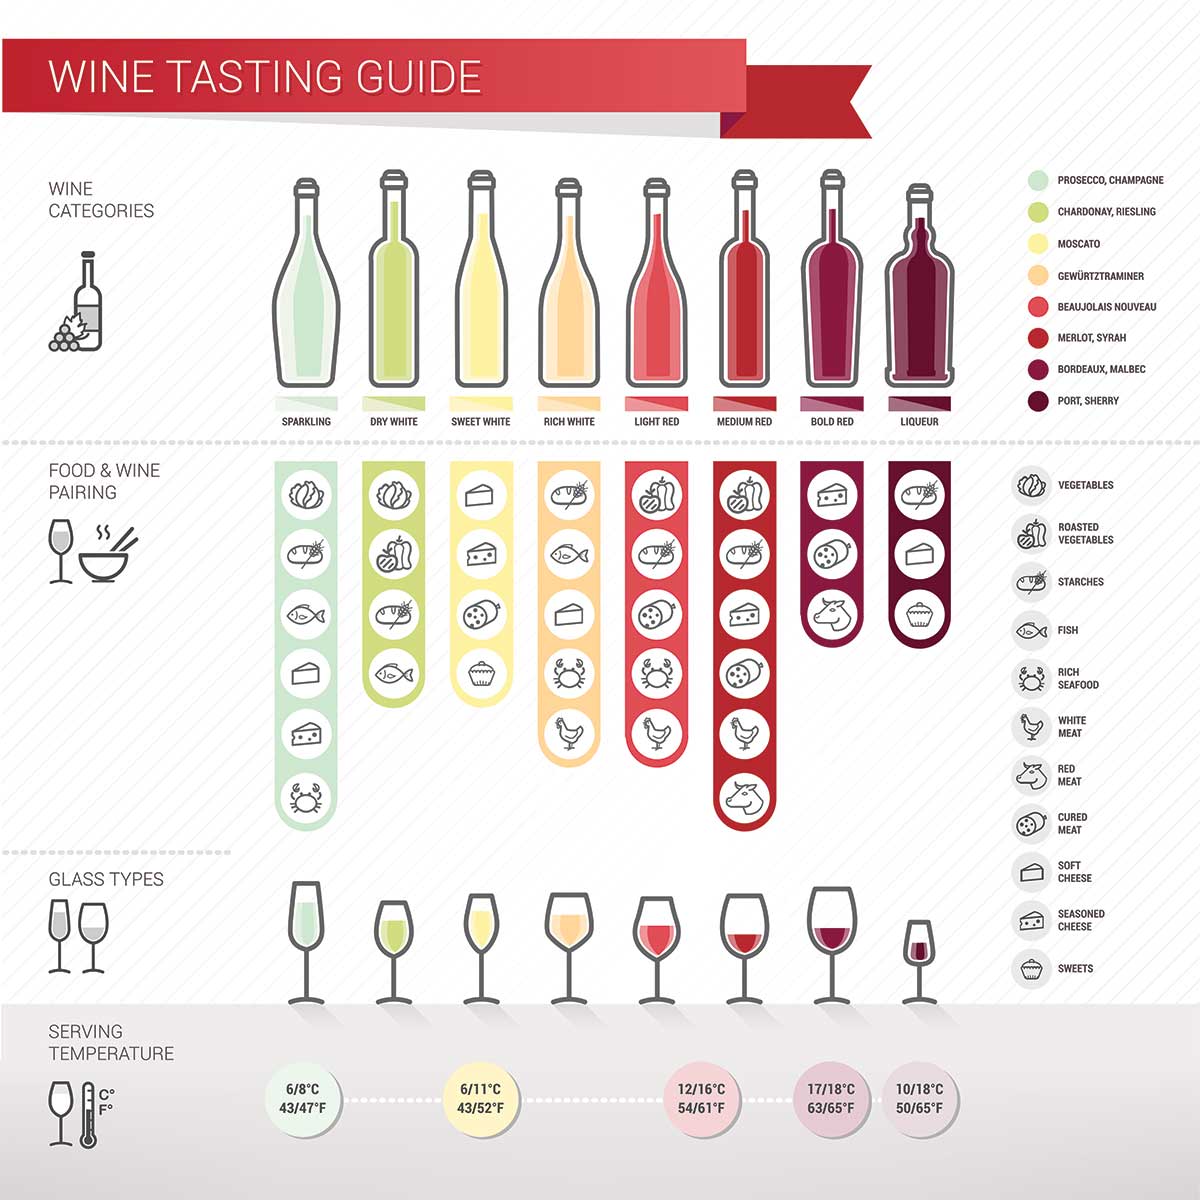 https://www.winetasting.com/wp-content/uploads/2017/04/wine-tasting-guide-1200px.jpg